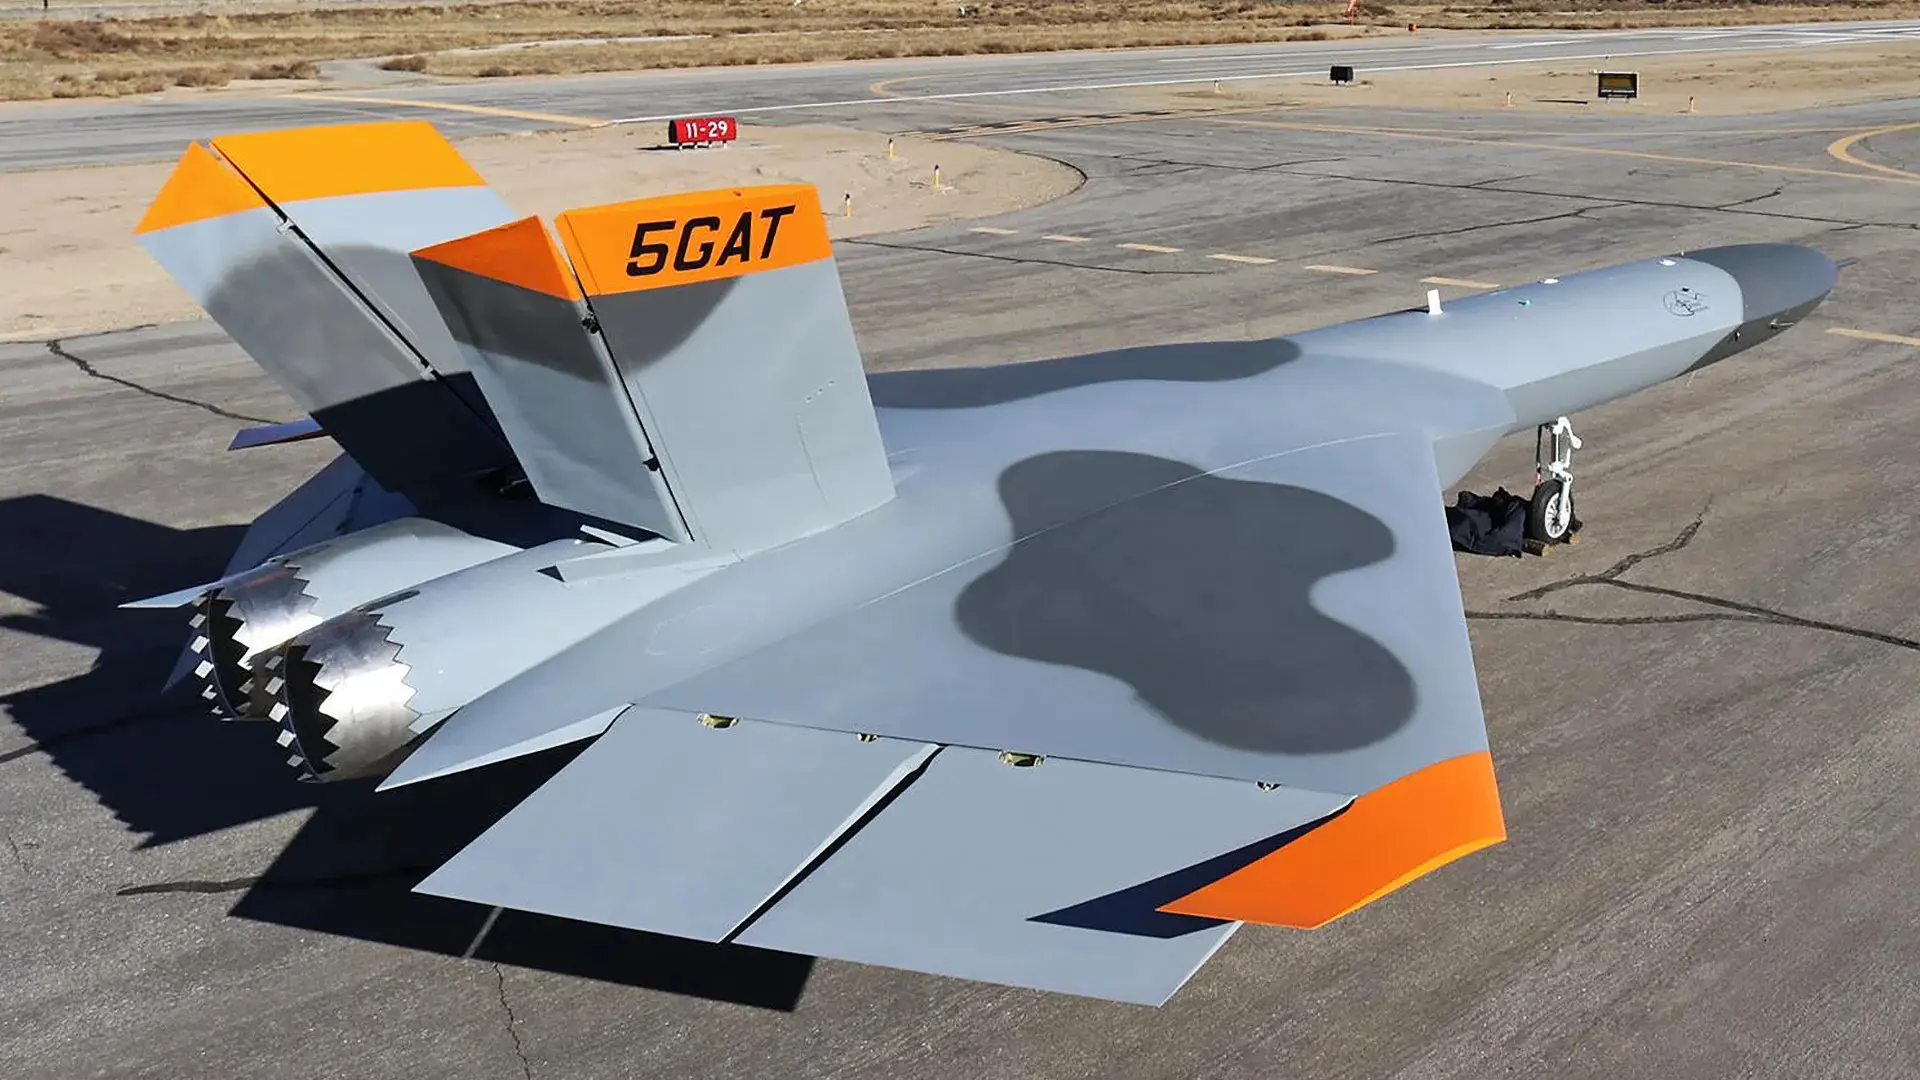 Die USA werden eine 5GAT-Drohne bauen, die Russlands Su-57-Kampfflugzeug der fünften Generation und Chinas J-20 nachahmt